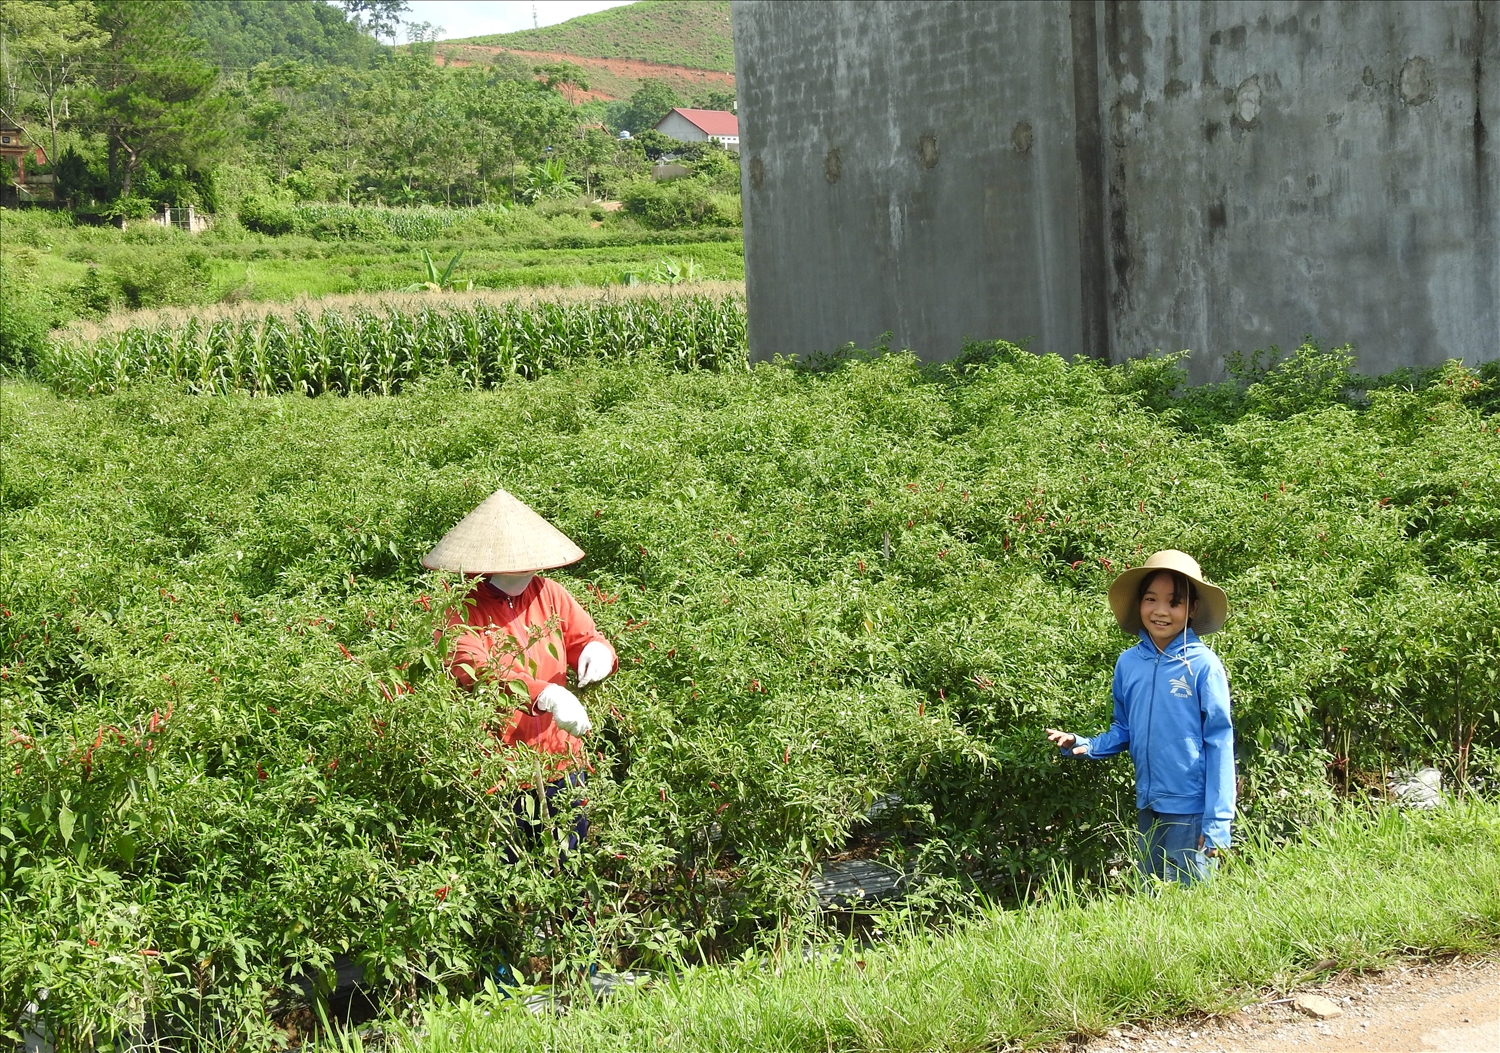 Tại huyện Chi Lăng có nhiều đảng viên, nhiều cá nhân, doanh nghiệp đã trực tiếp hỗ trợ cây trồng, vật nuôi, giúp đỡ bằng tiền, sức lao động để giúp các hộ nghèo, hộ khó khăn, thôn khó khăn có thêm nguồn lực phát triển sản xuất, xây dựng cầu đường, nhà ở ổn định cuộc sống